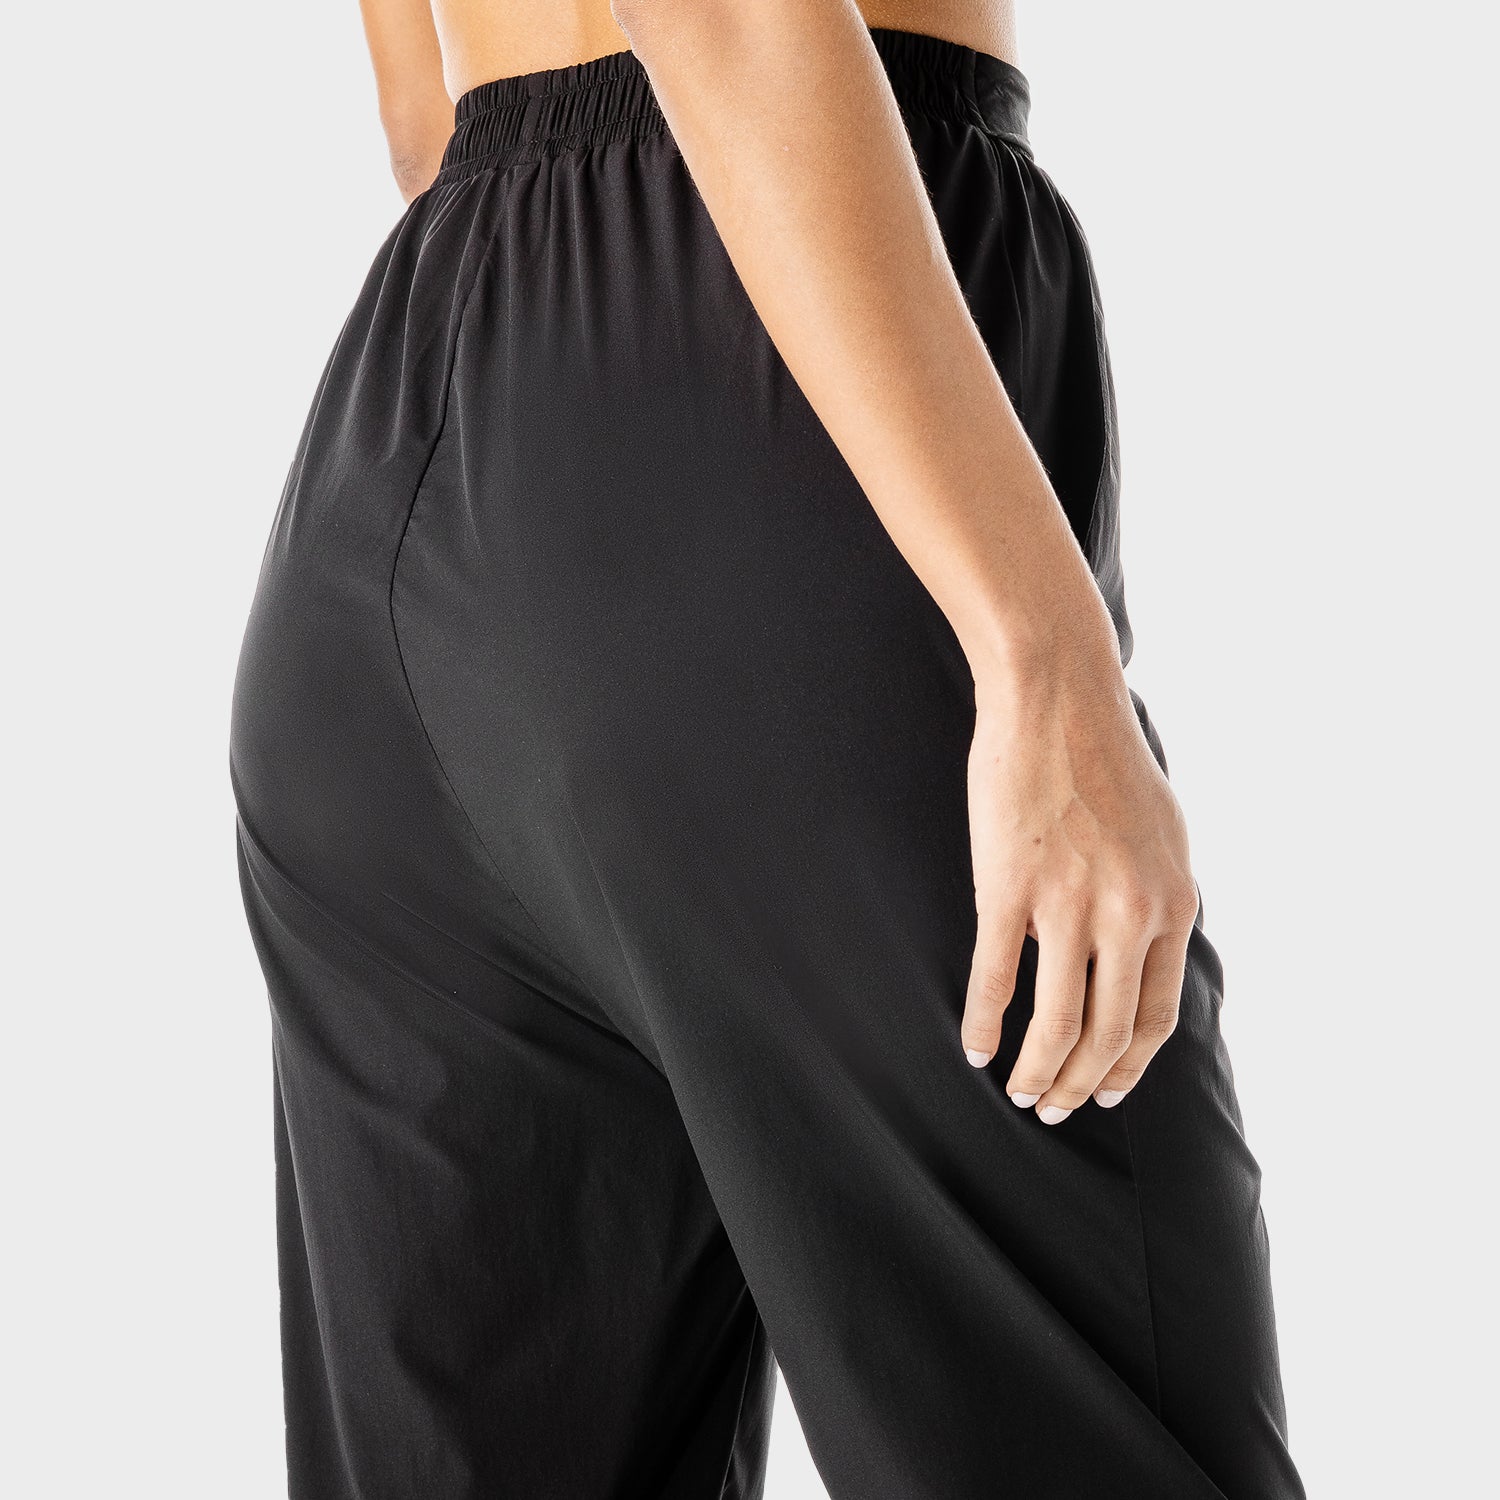 Hybrid Wide Leg Pants - Black, Workout Pants Women, SQUATWOLF